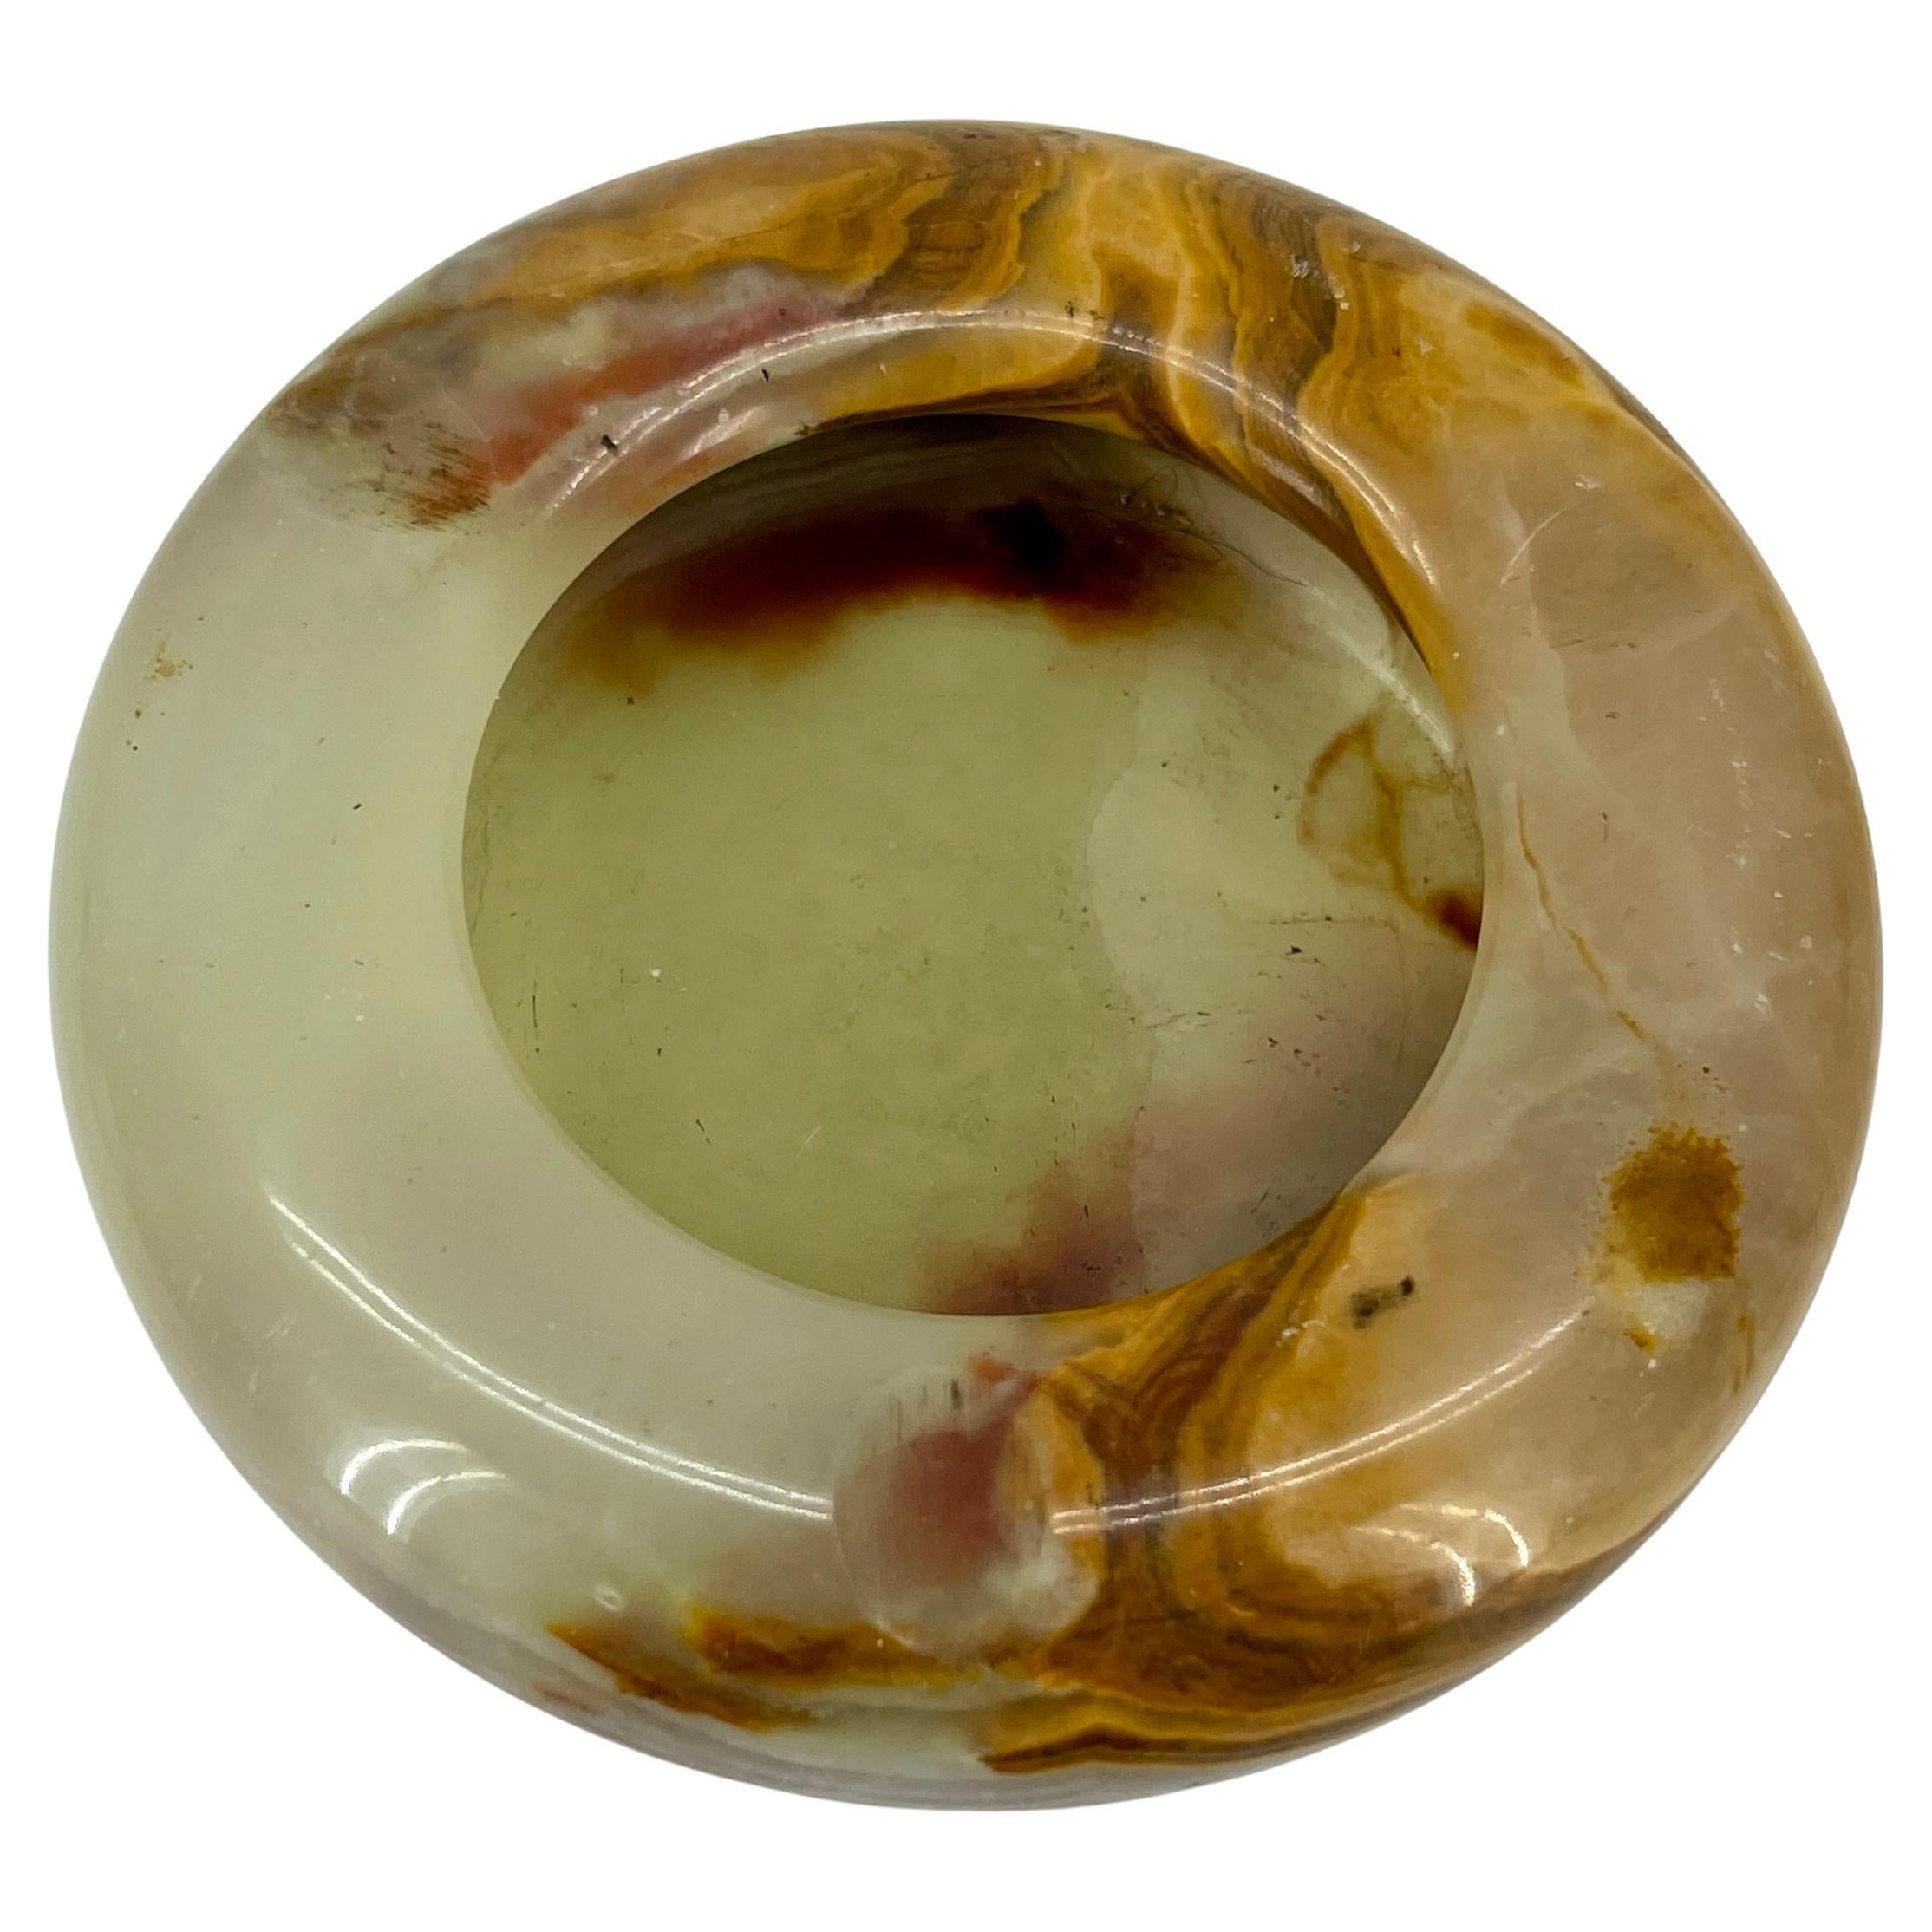 Mid-Century Modern runde Onyx-Schale oder Aschenbecher. Diese außergewöhnliche runde Onyxschale wurde in Spanien in den 1950er Jahren hergestellt. Geschnitzter und polierter Onyxstein, der die charakteristischen Bänder des Minerals zeigt. Schön als